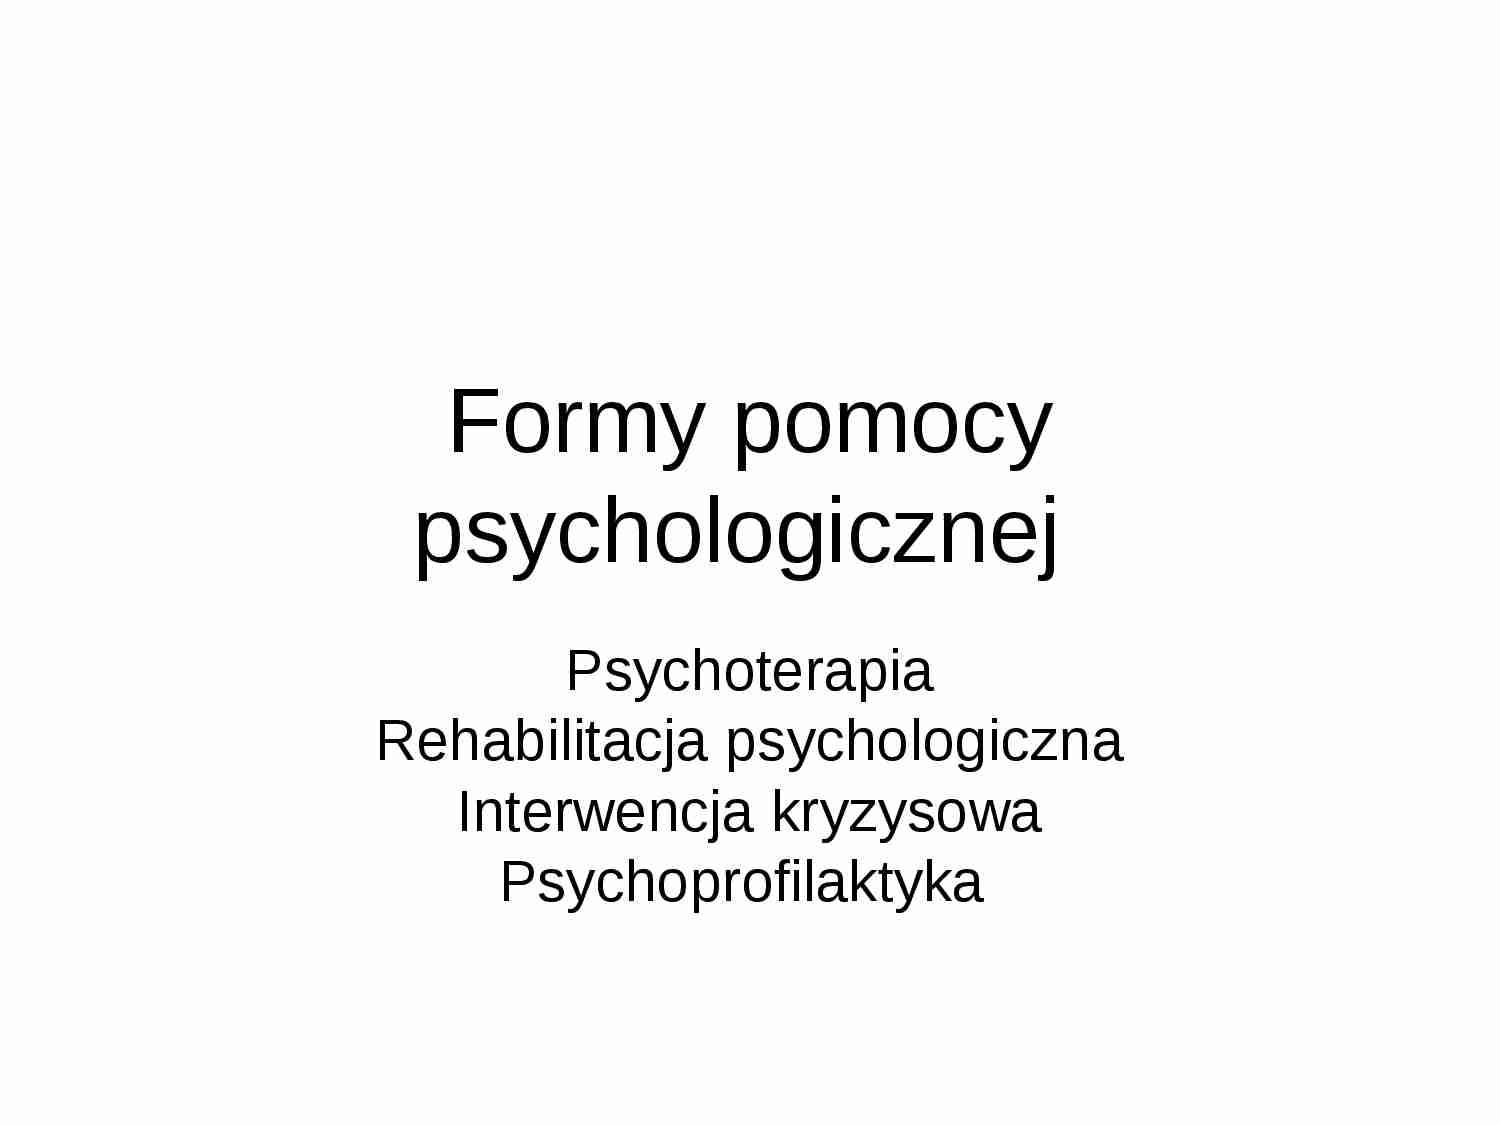 Formy pomocy psychologicznej - prezentacja na zajęcia - strona 1